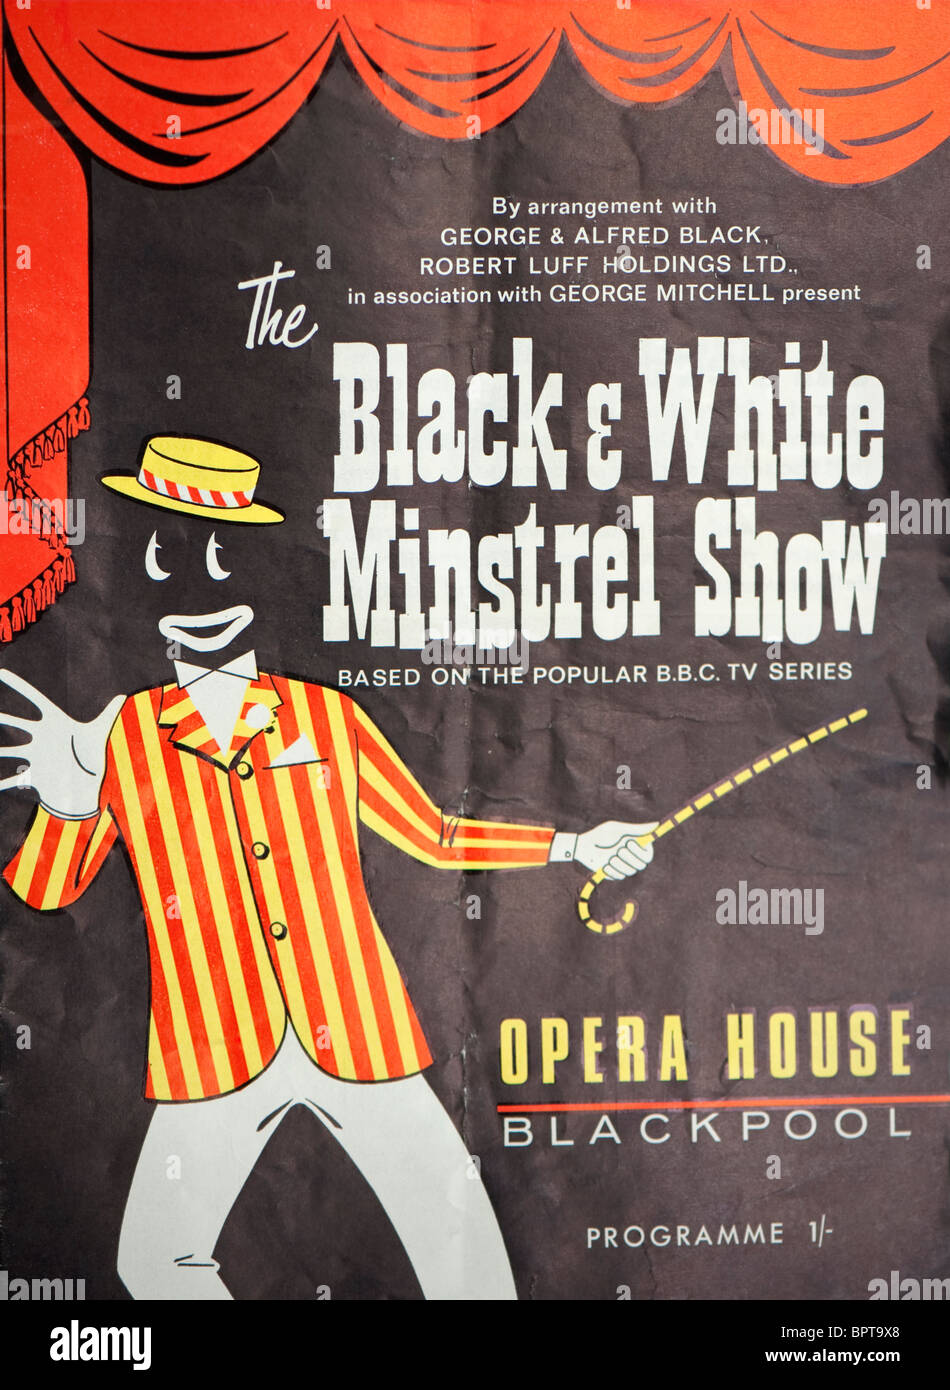 Couverture d'un guide pour la Black & White Minstrel Show à l'Opera House de Blackpool. Banque D'Images